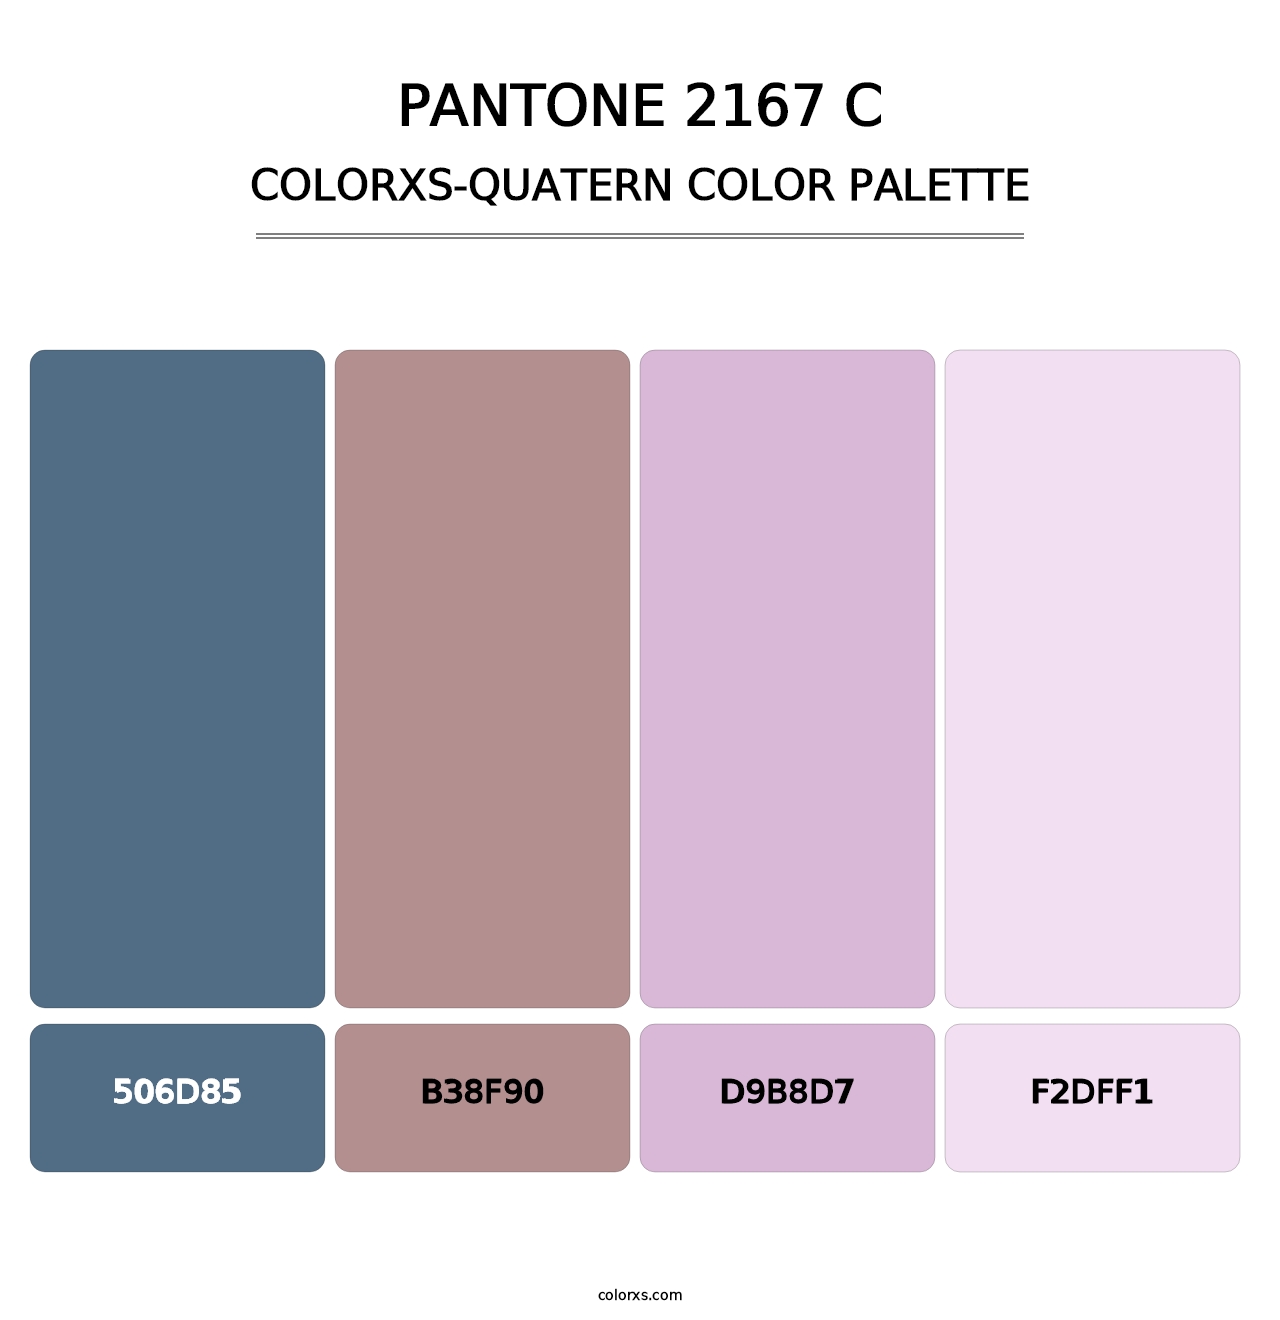 PANTONE 2167 C - Colorxs Quatern Palette